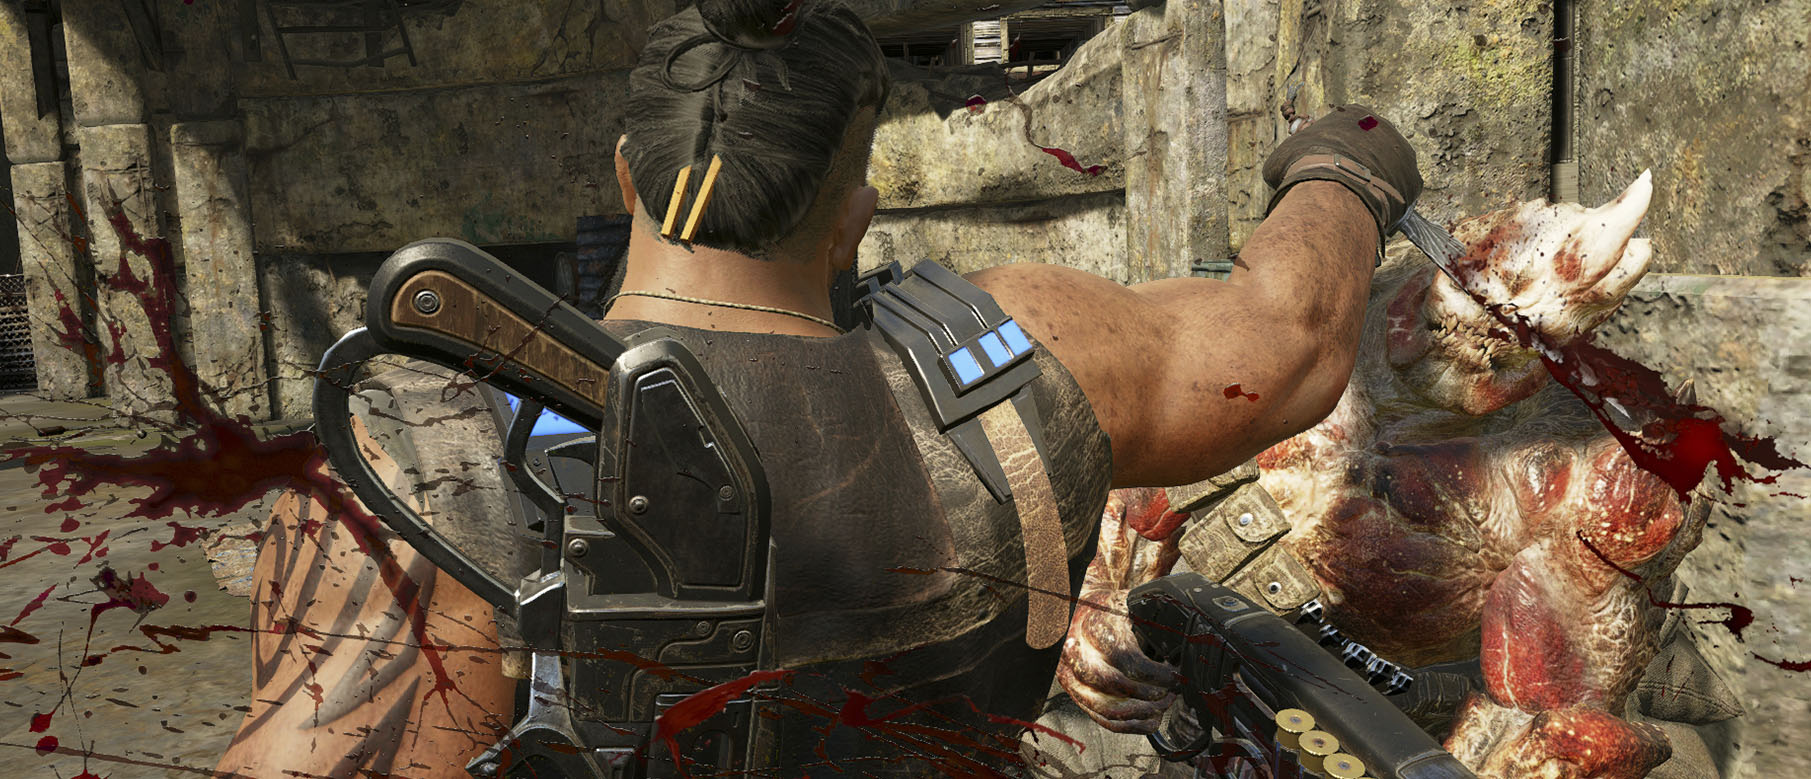 Изображение к 8 новых скриншотов из беты Gears of War 4 и куча геймплея